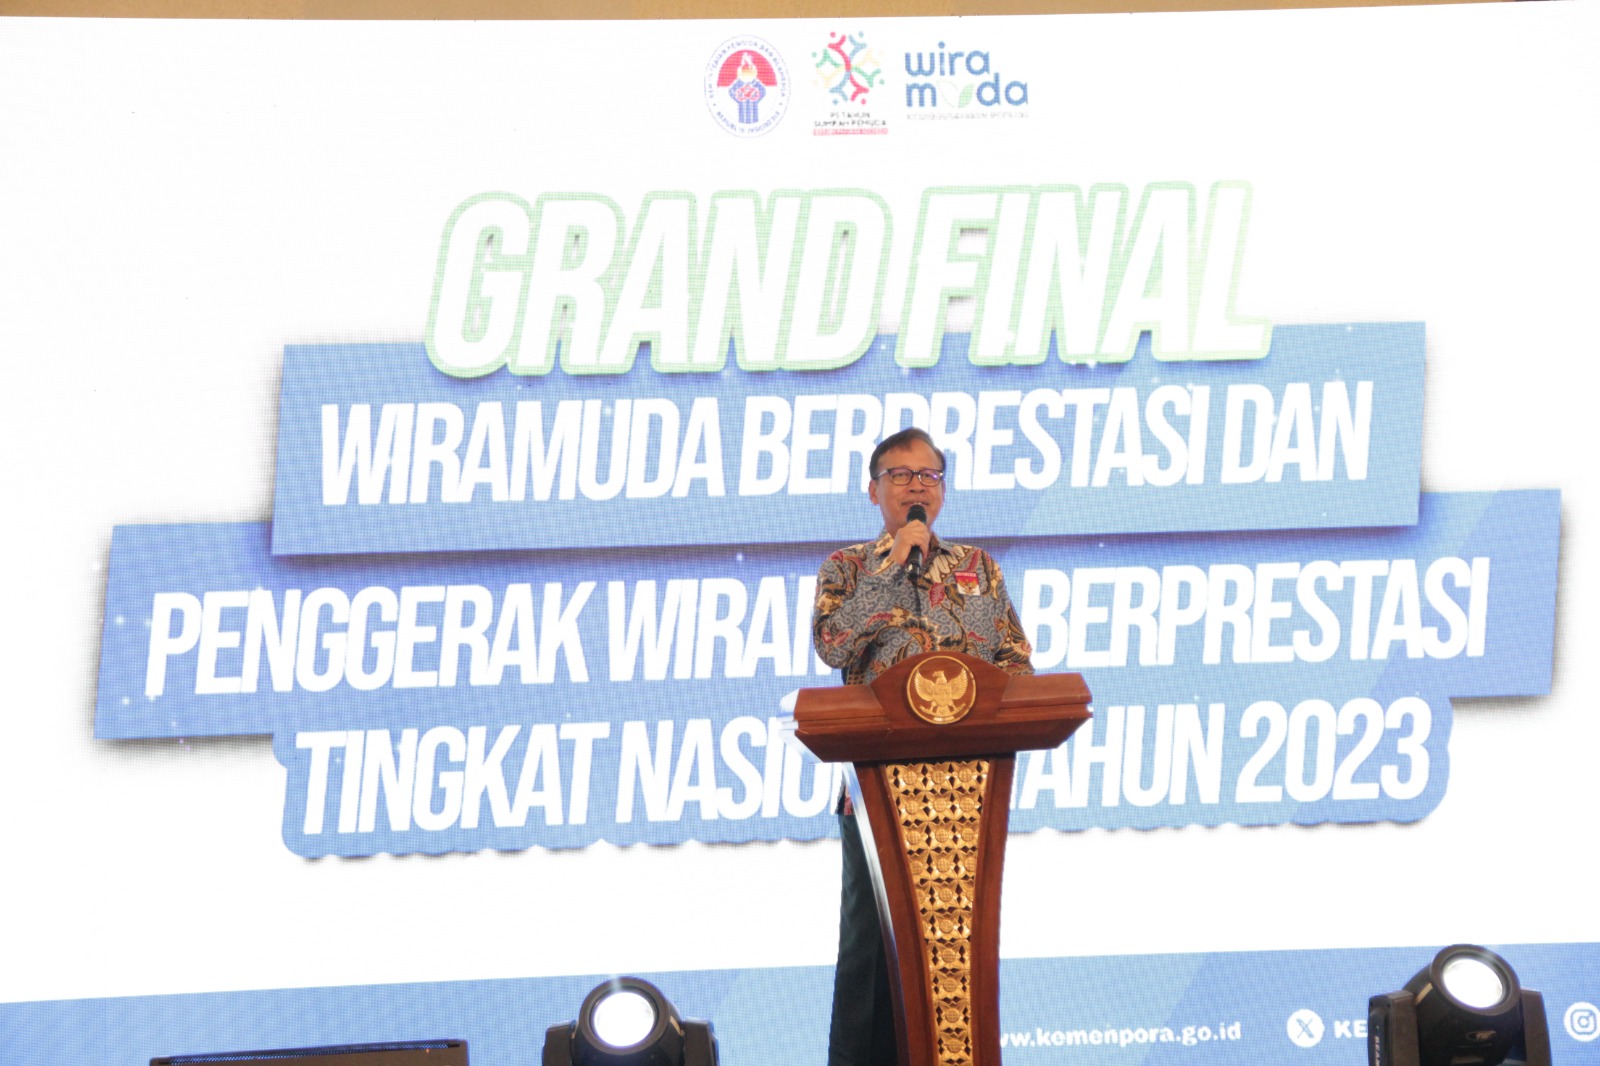 Kemenpora Harap Wiramuda dan Penggerak Wiramuda Berprestasi Tingkat Nasional 2023 Perkuat Jaringan Bisnis